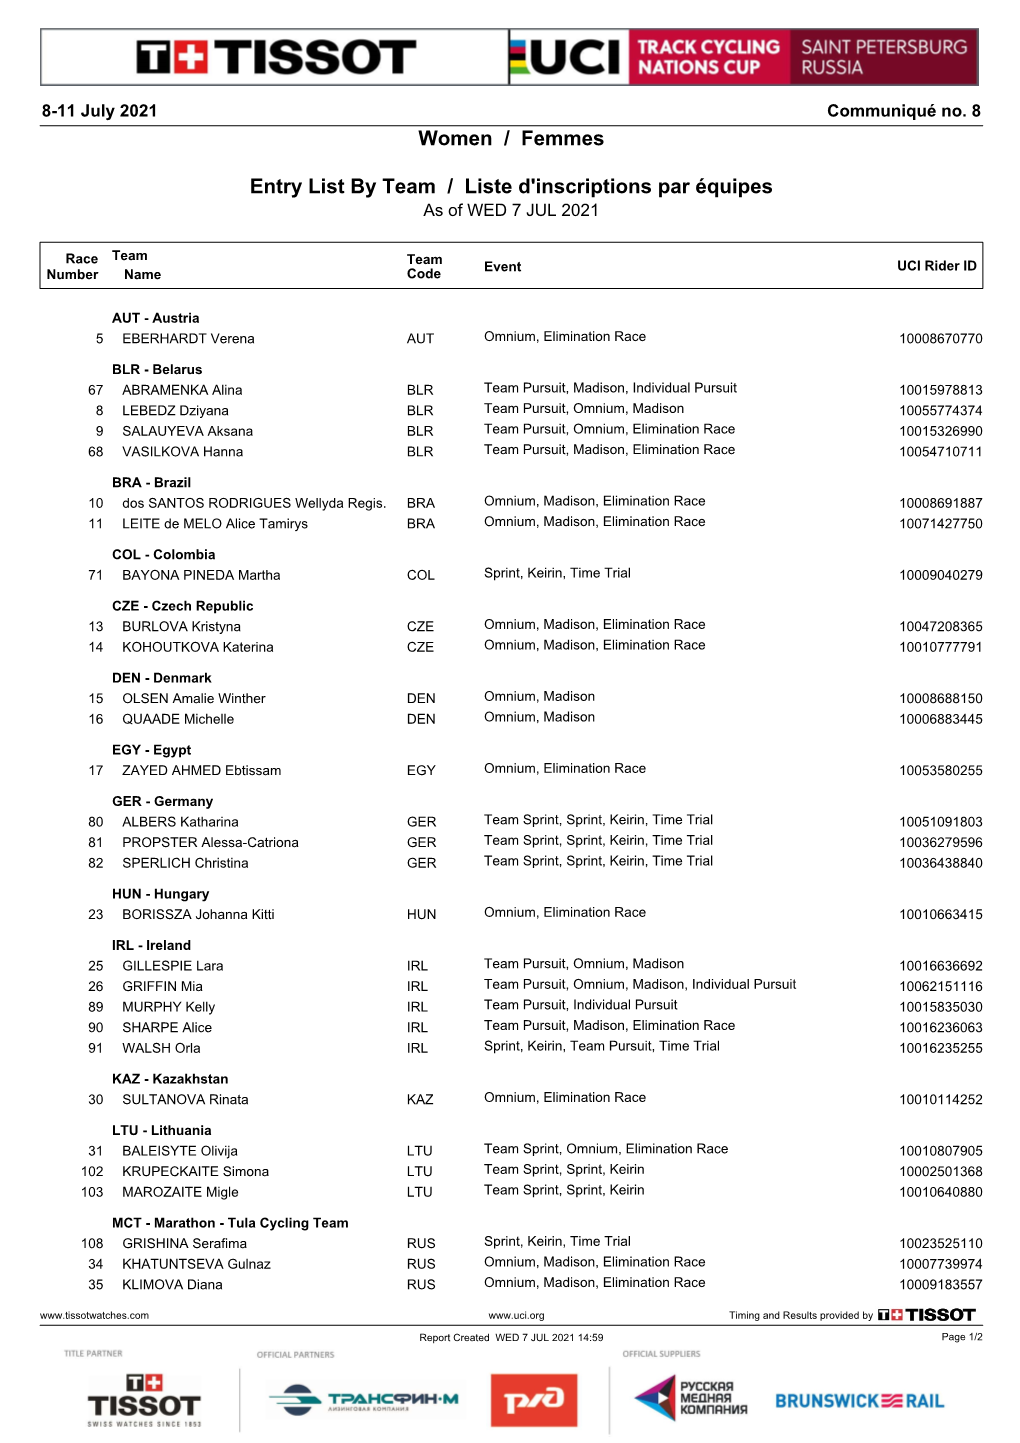 Women / Femmes Entry List by Team / Liste D'inscriptions Par Équipes